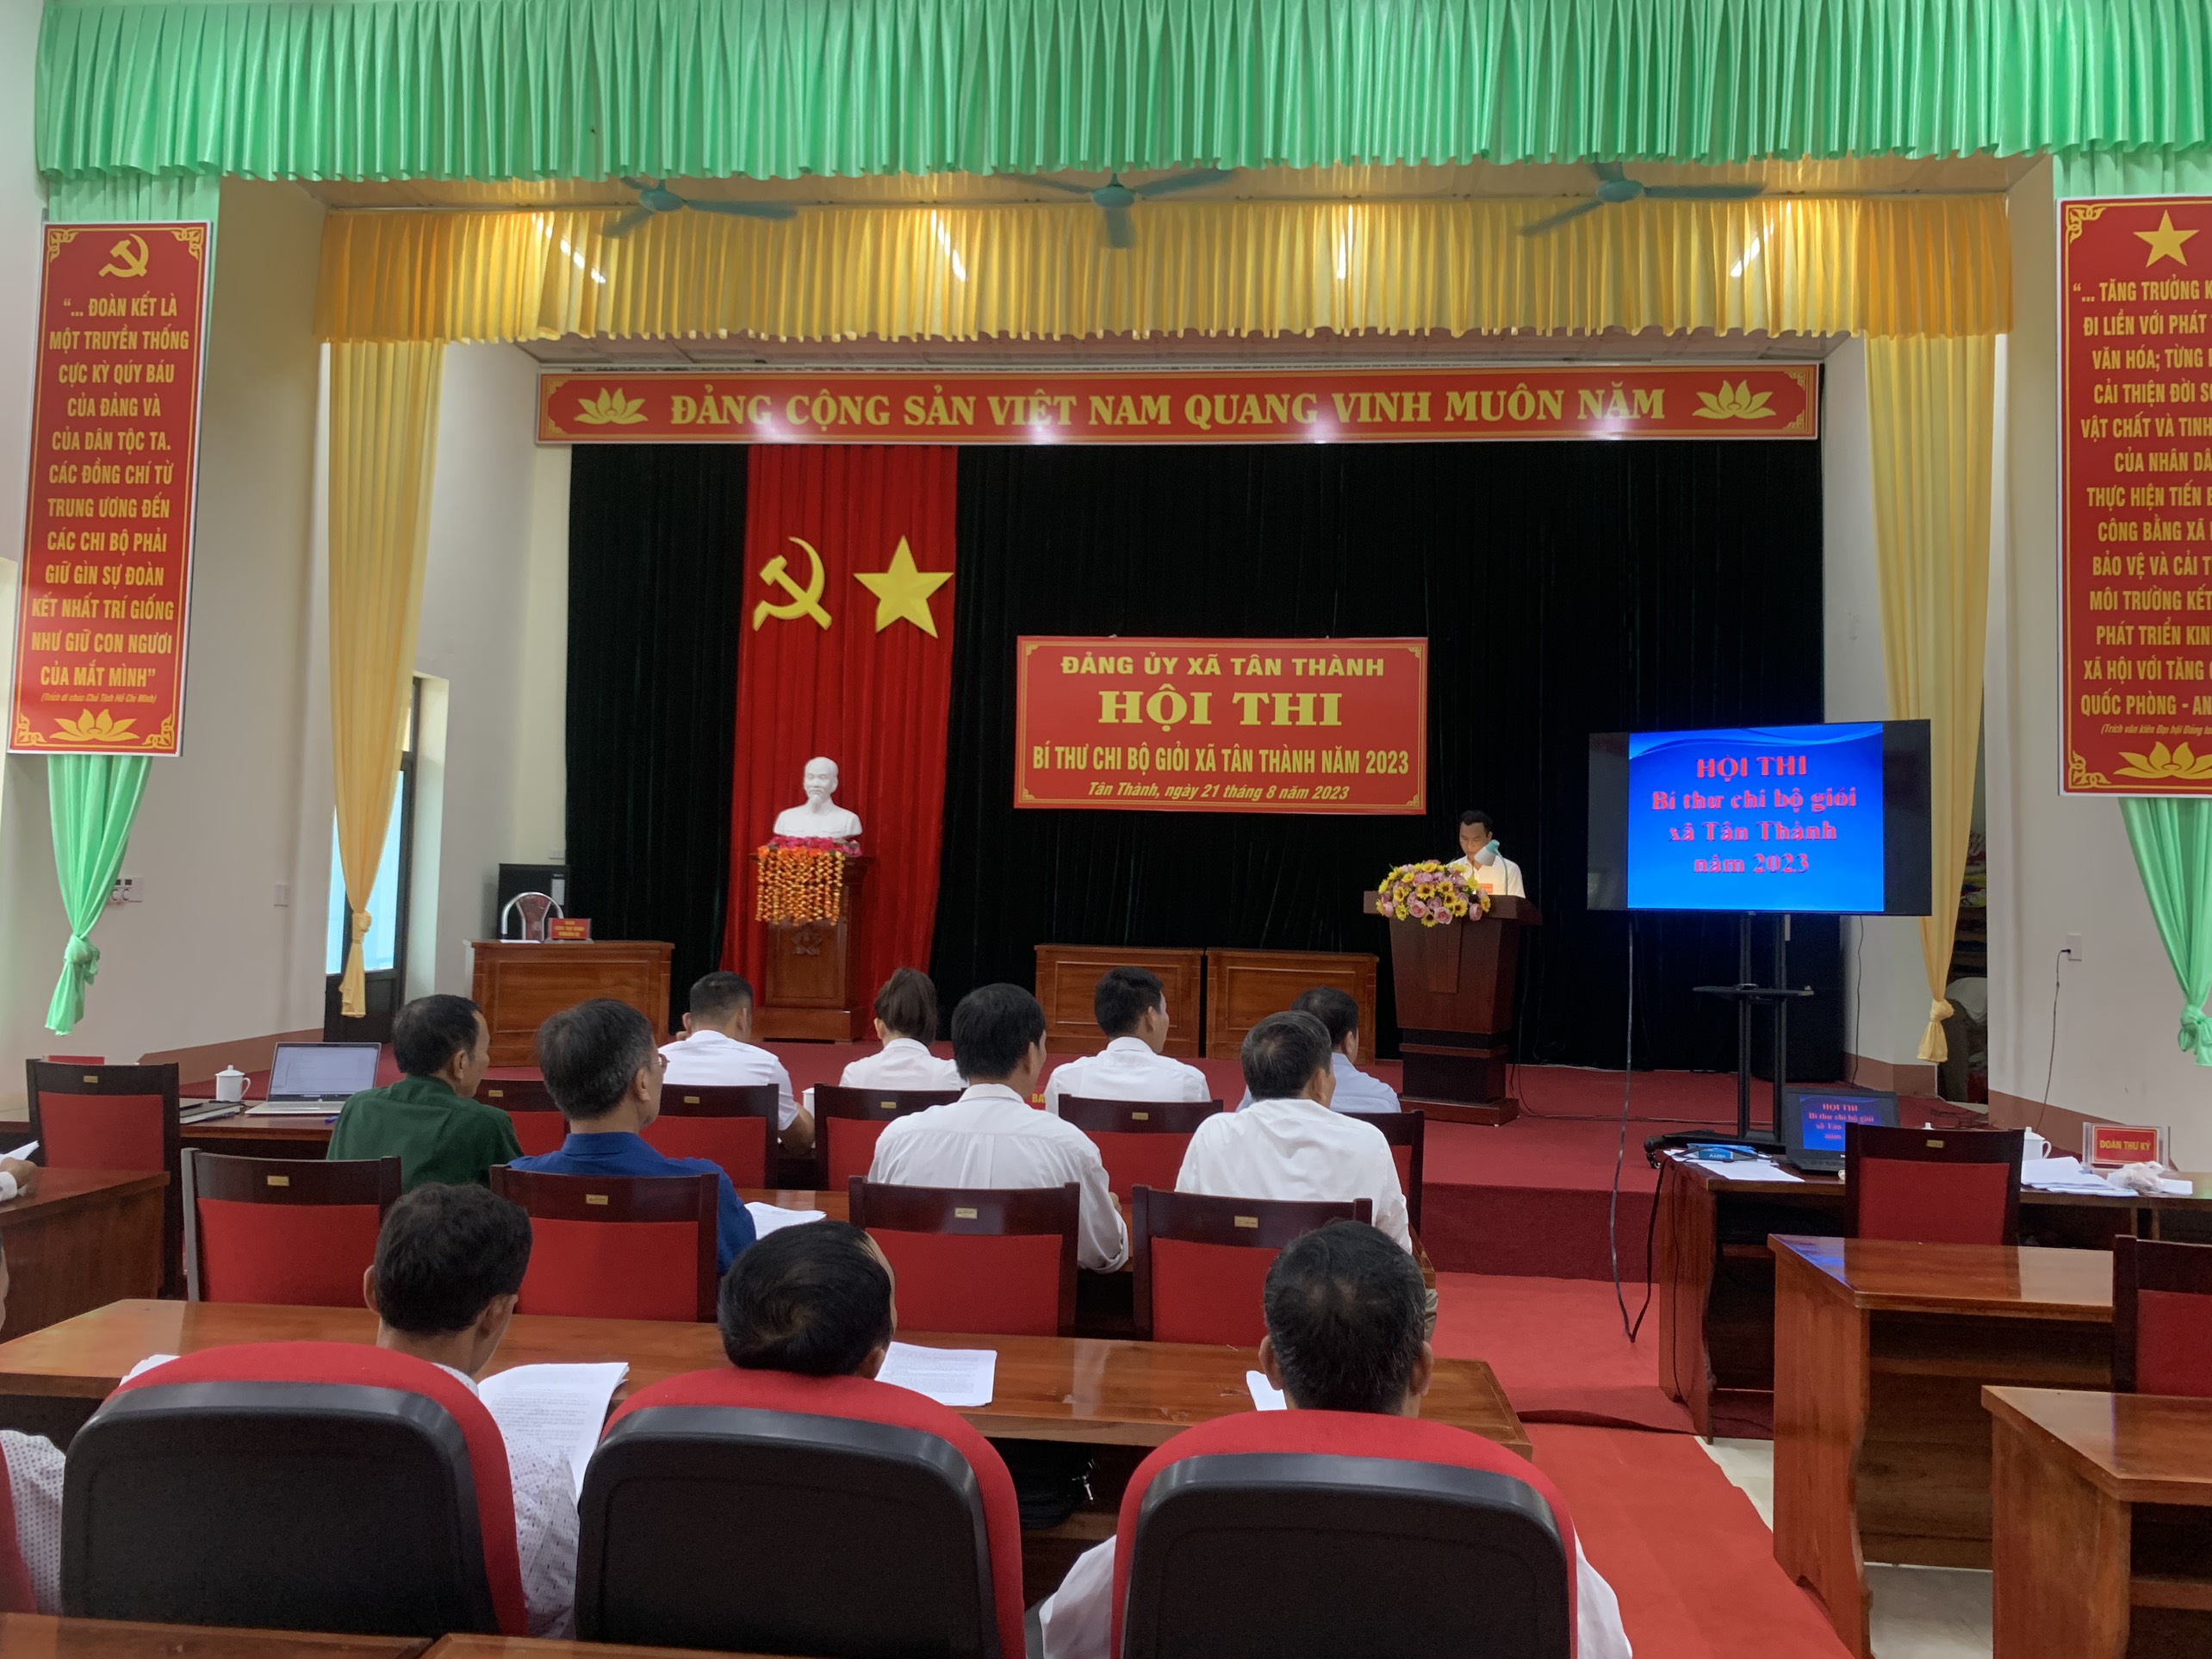 Đảng ủy xã Tân Thành tổ chức hội thi Bí thư chi bộ giỏi năm 2023